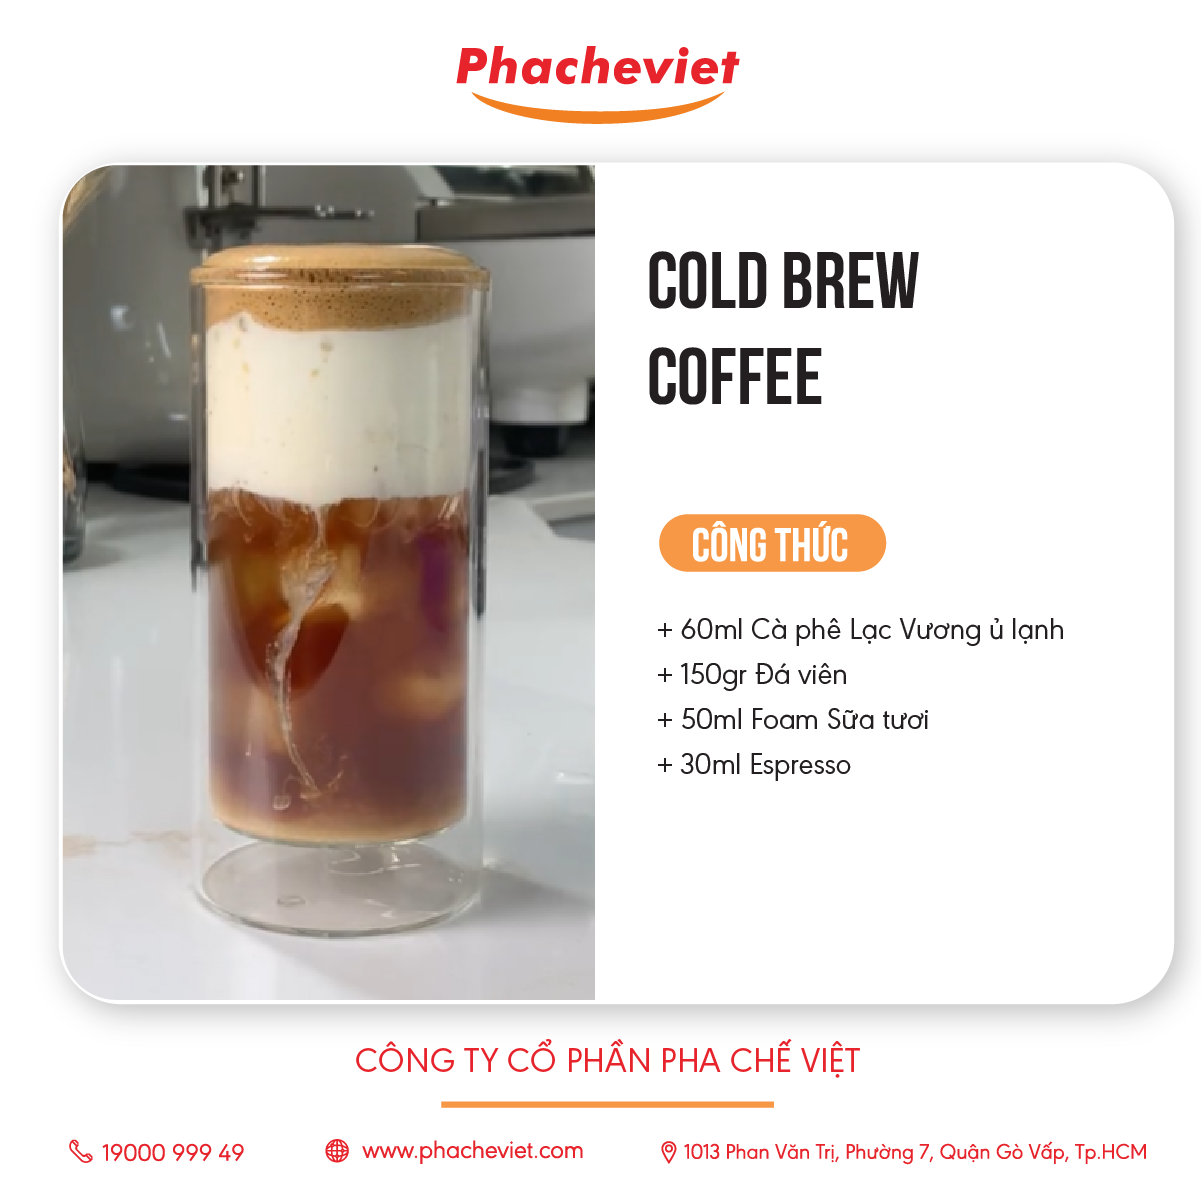 Công thức pha chế Cold Brew Coffee